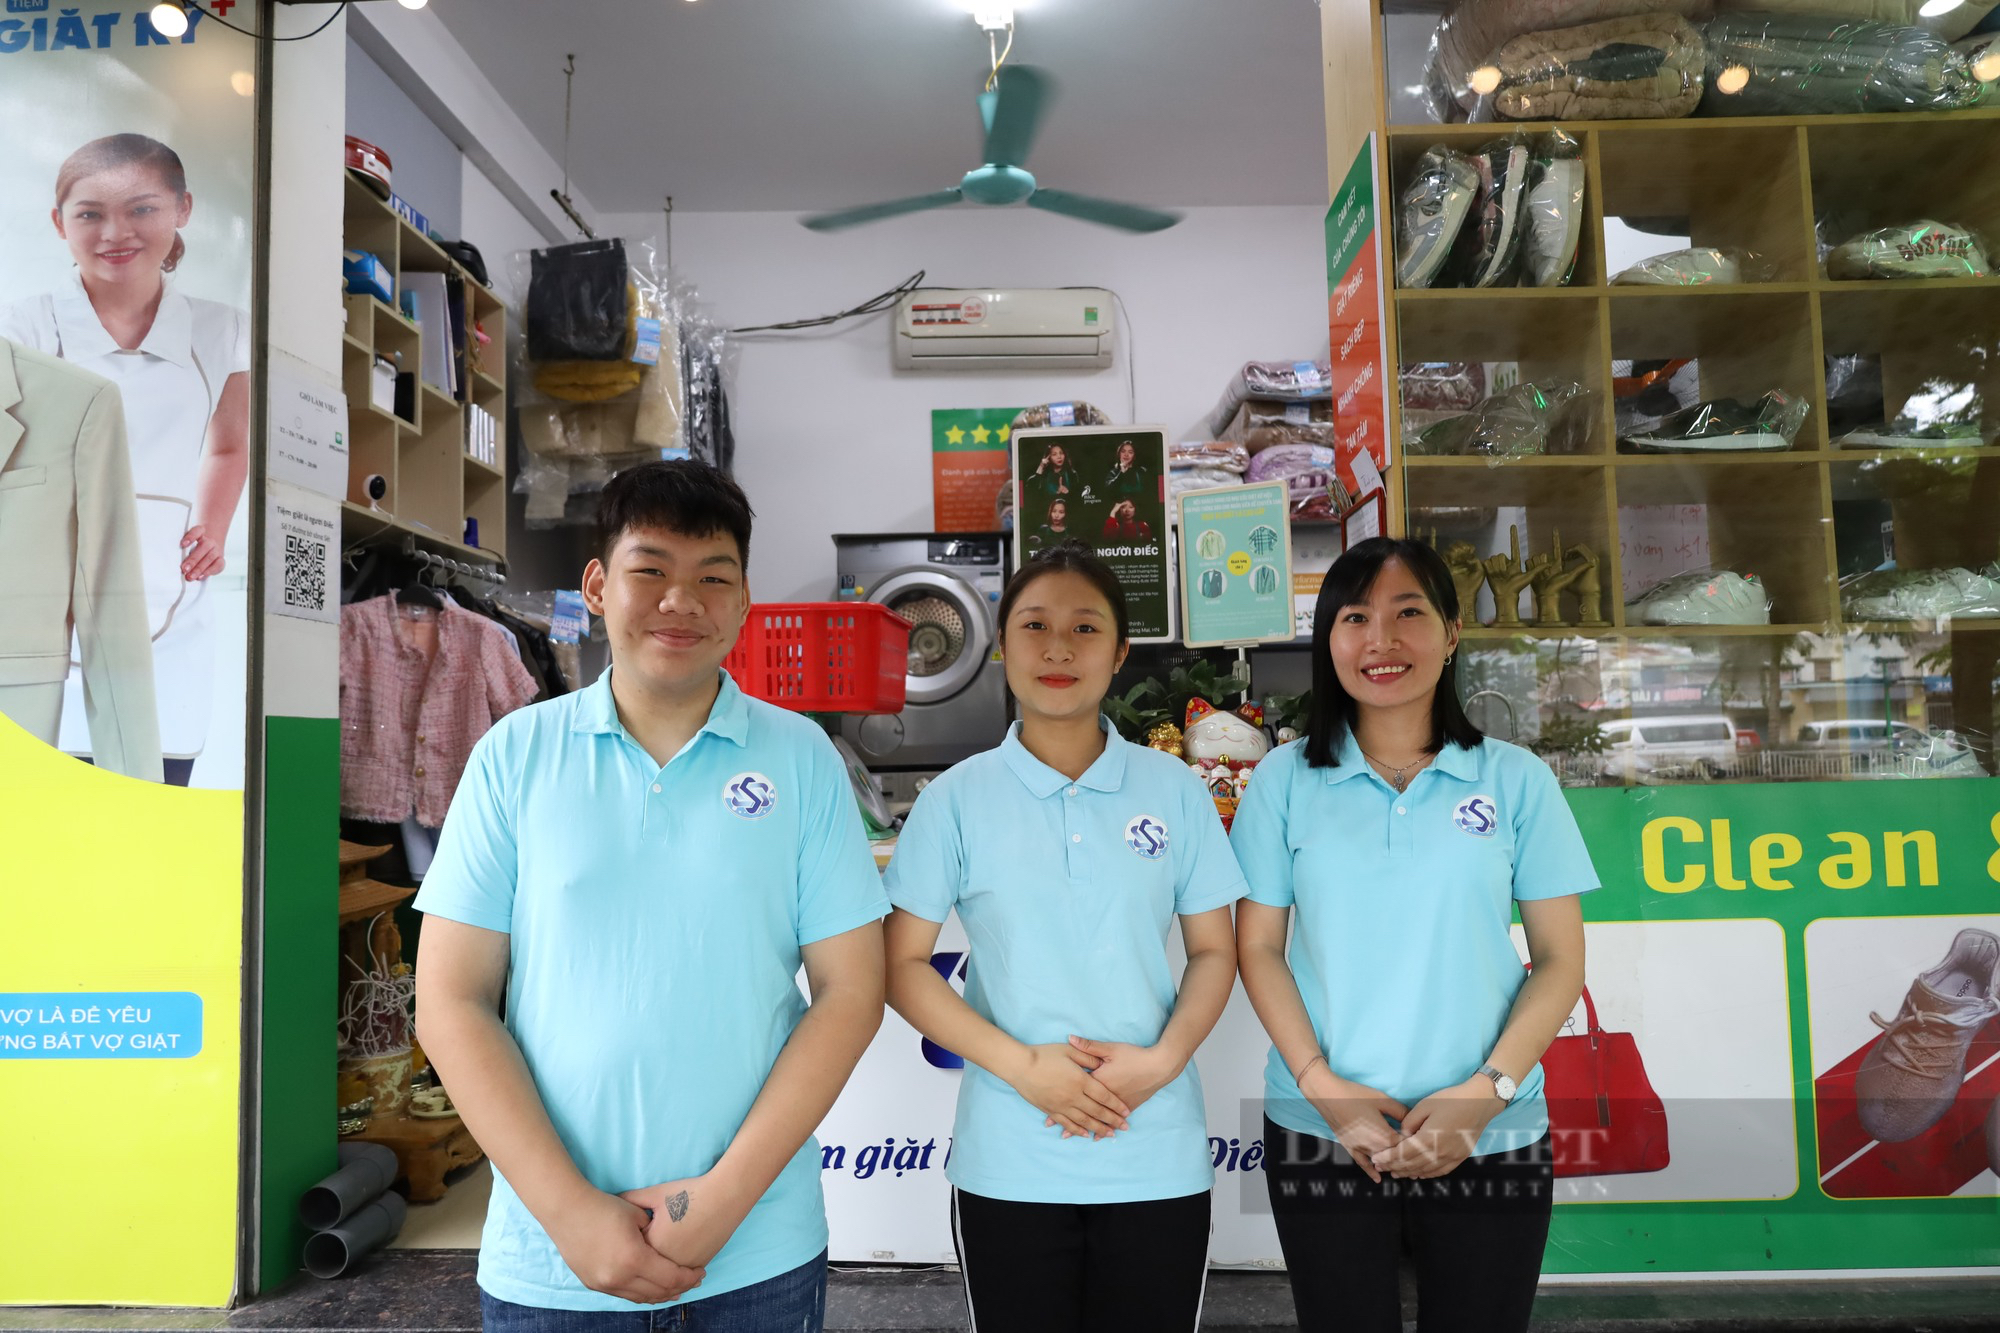 Tiệm giặt là đặc biệt ở Hà Nội chỉ sử dụng “cử chỉ bằng tay” để giao tiếp với khách hàng - Ảnh 6.